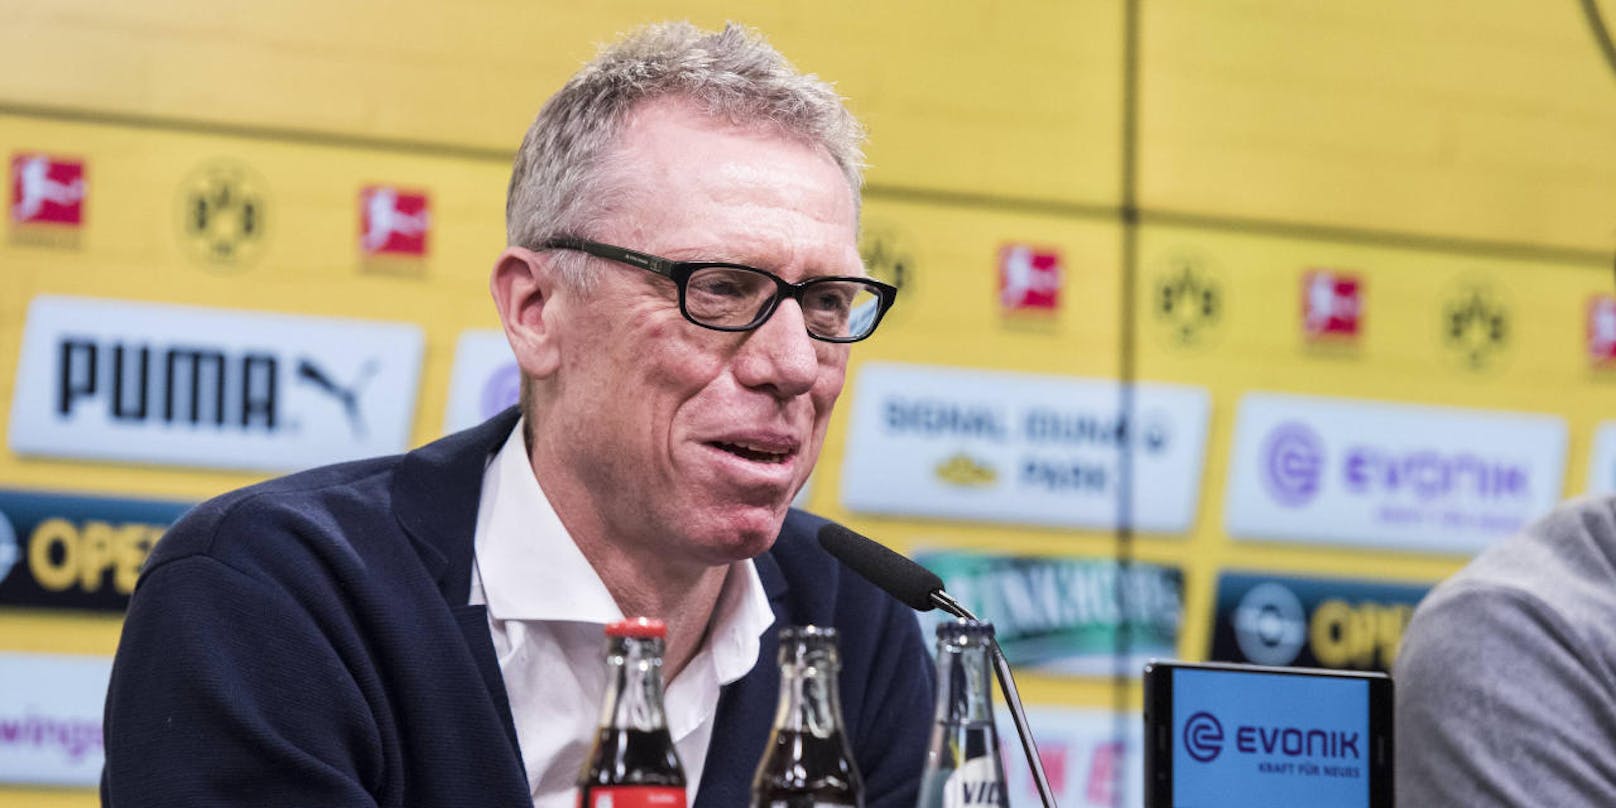 Peter Stöger ist neuer Dortmund-Trainer! "Heute" hat die besten Bilder seiner Präsentation zum Durchklicken.